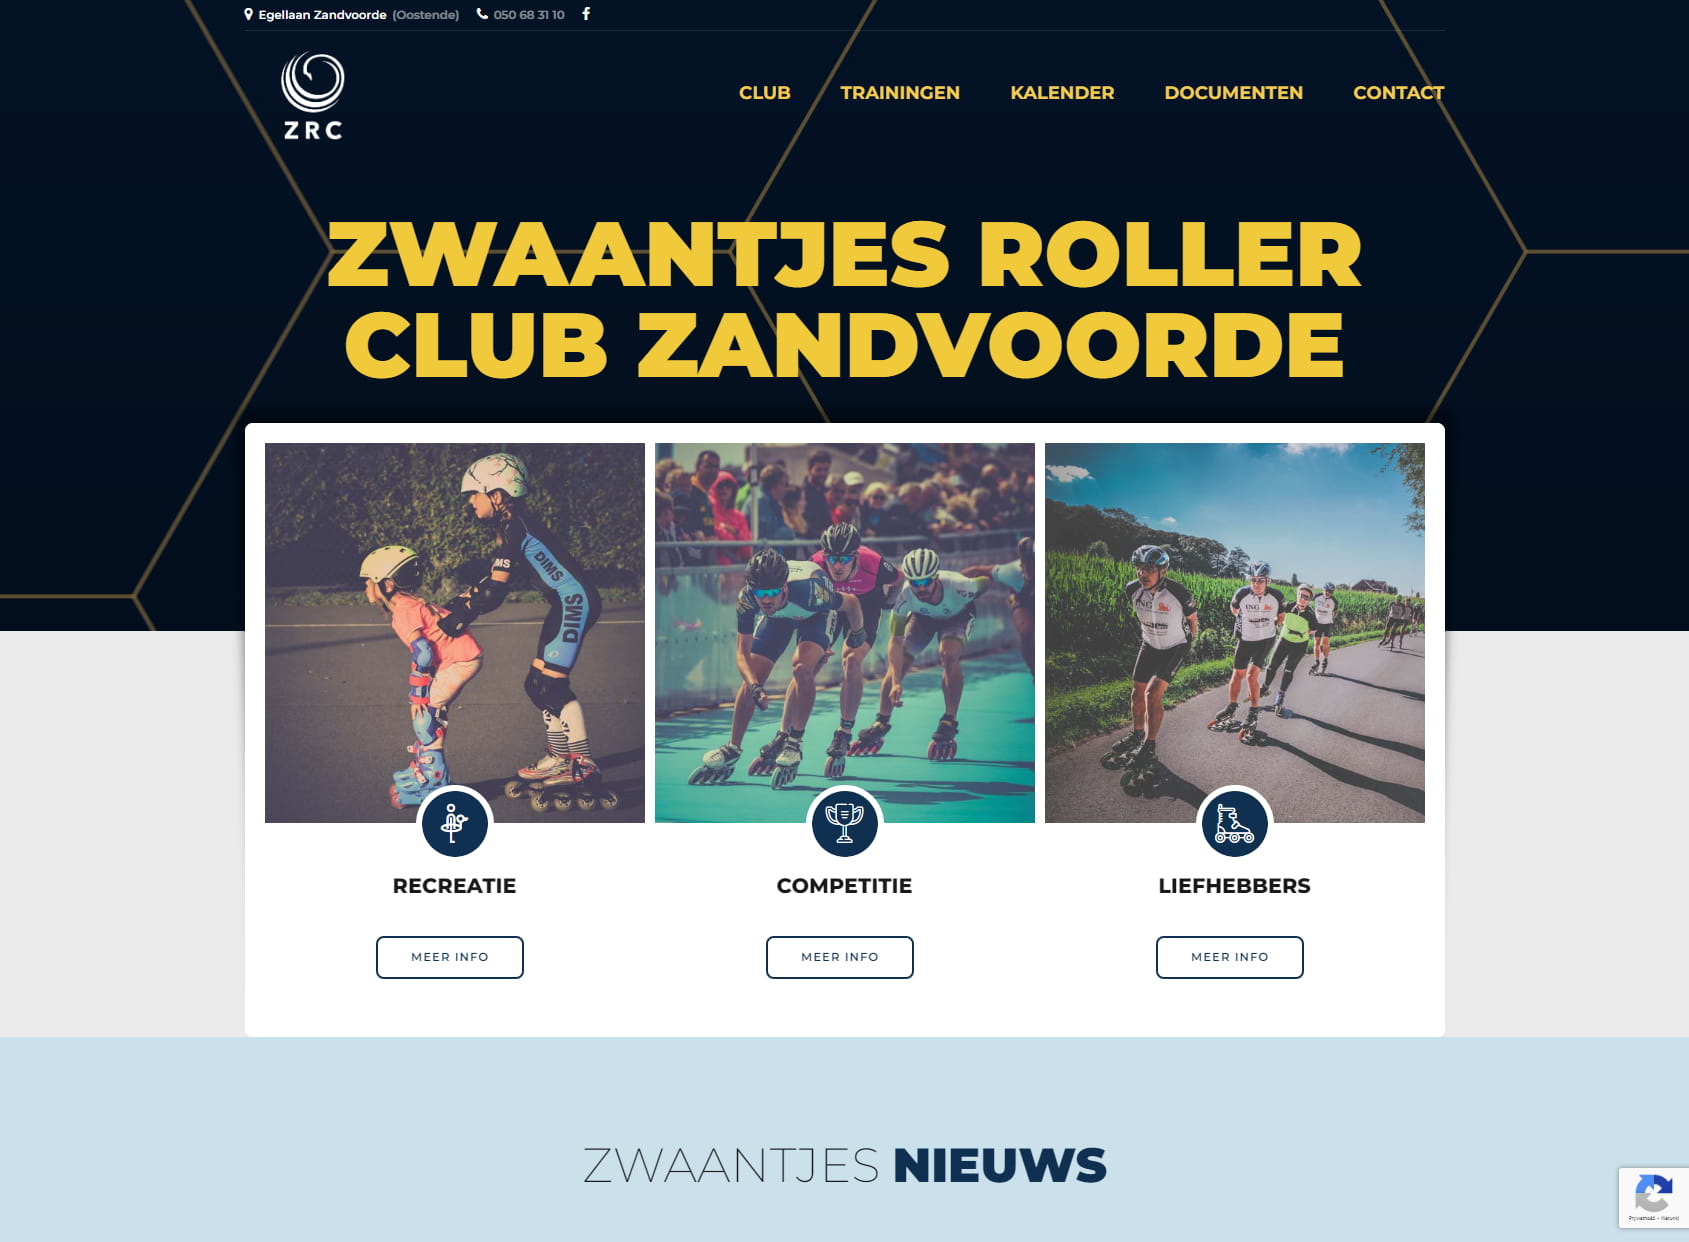 Zwaantjes Roller Club Zandvoorde